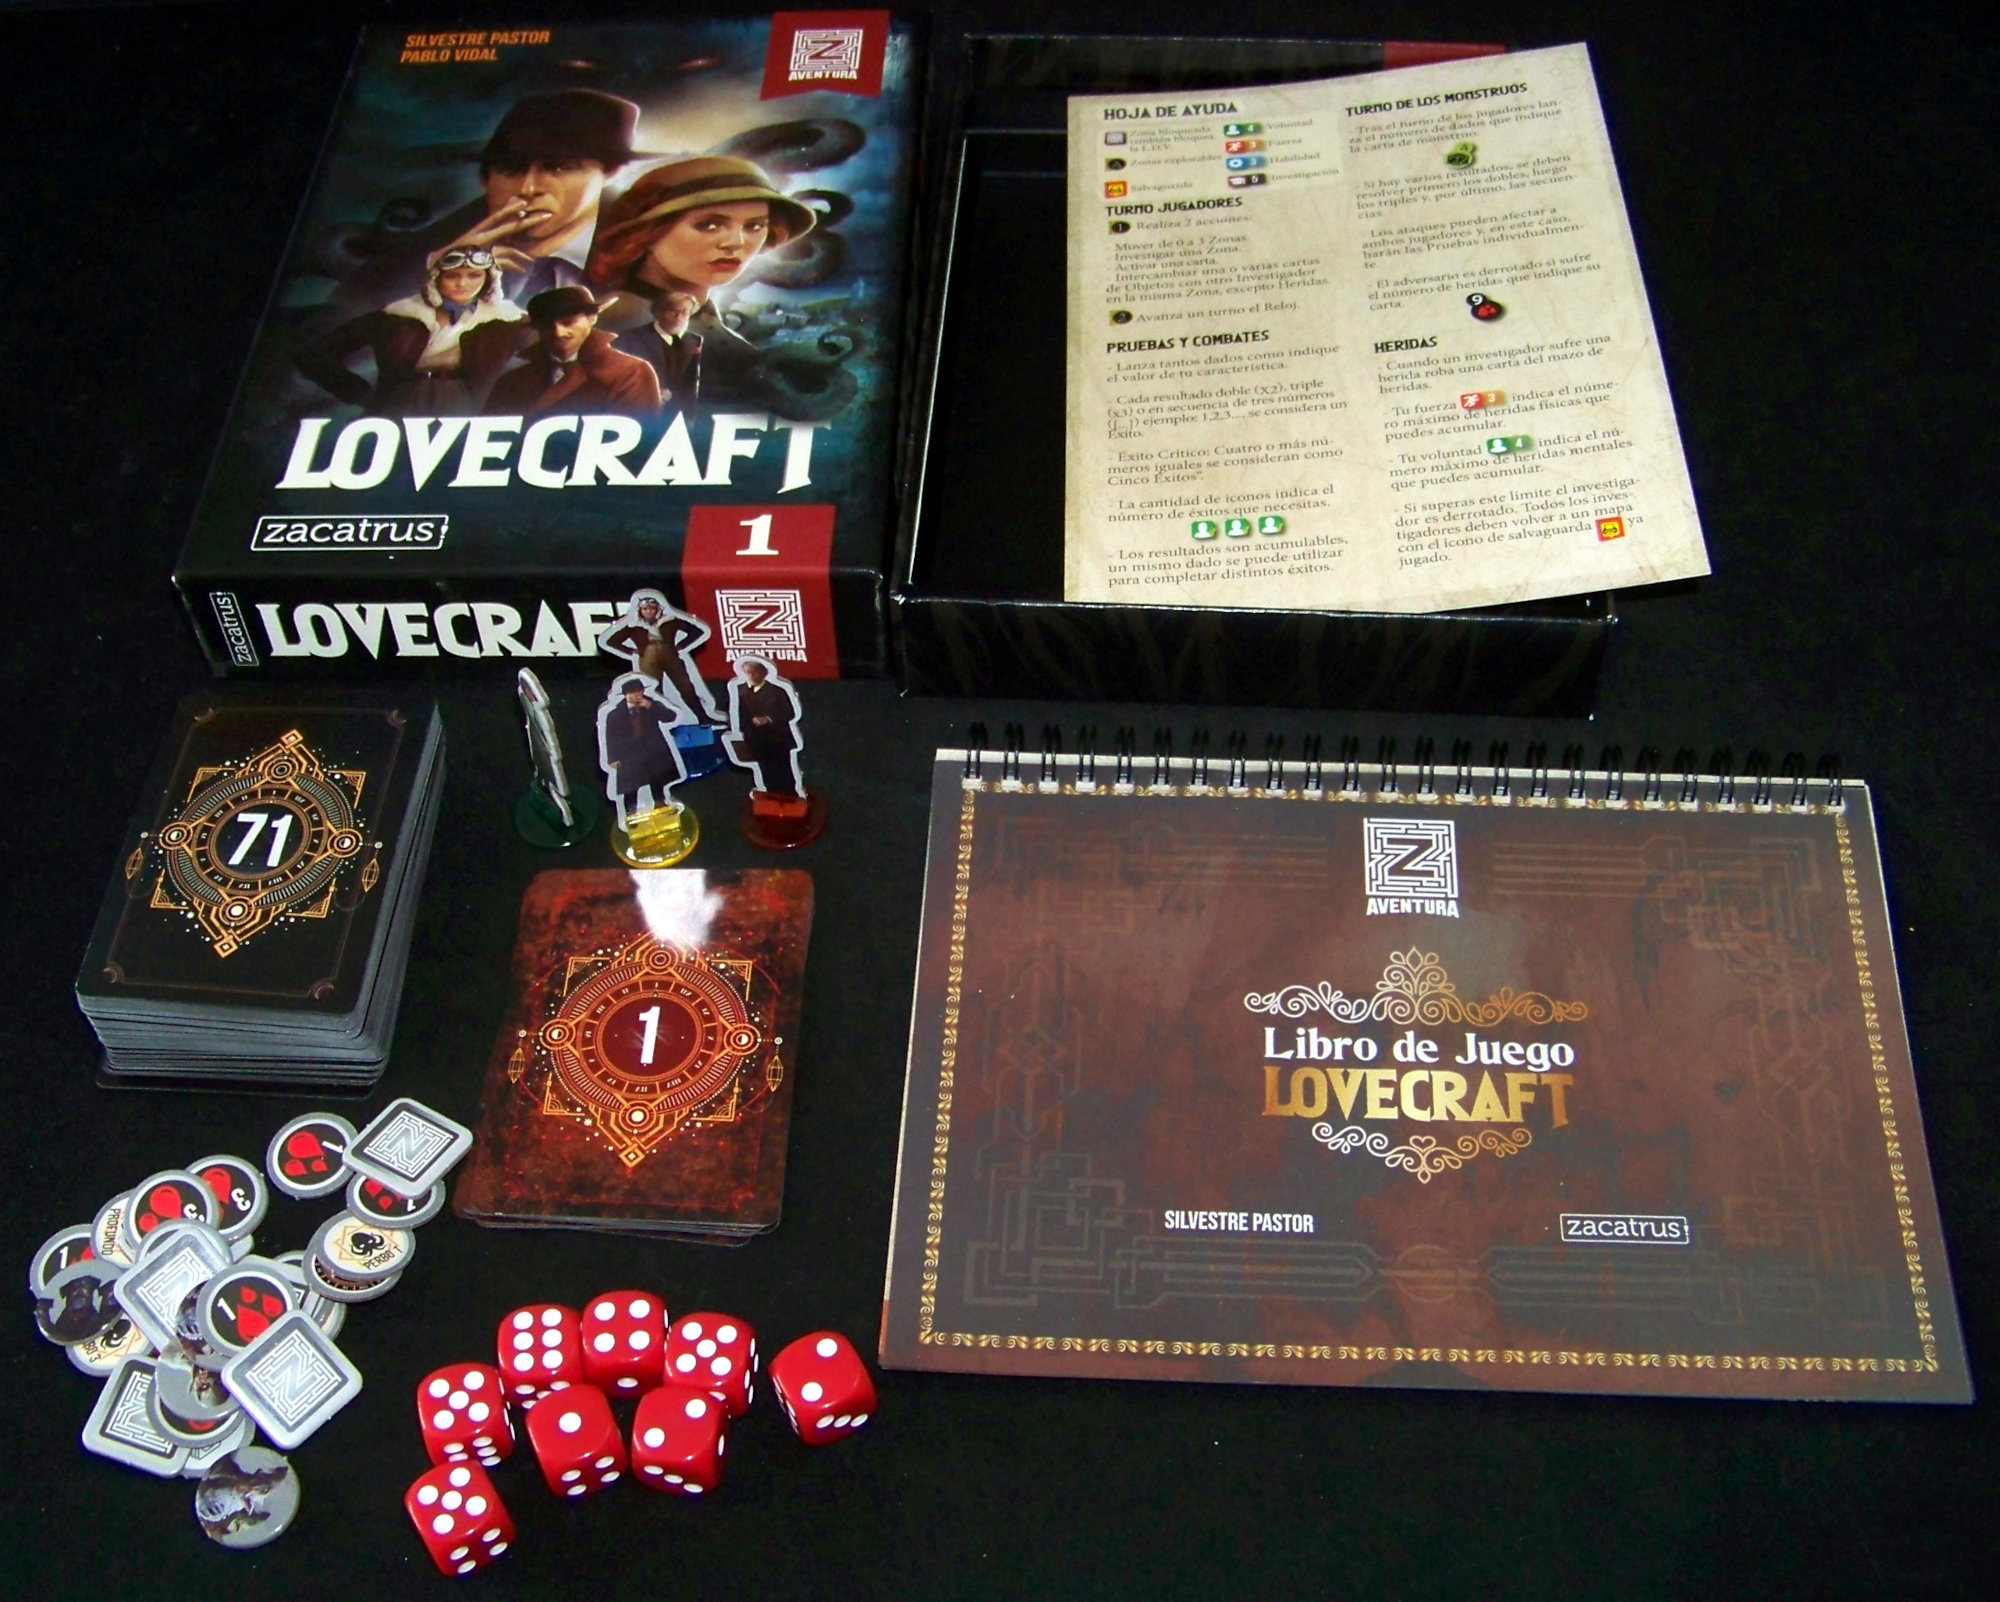 Juego de mesa Lovecraft - contenido de la caja